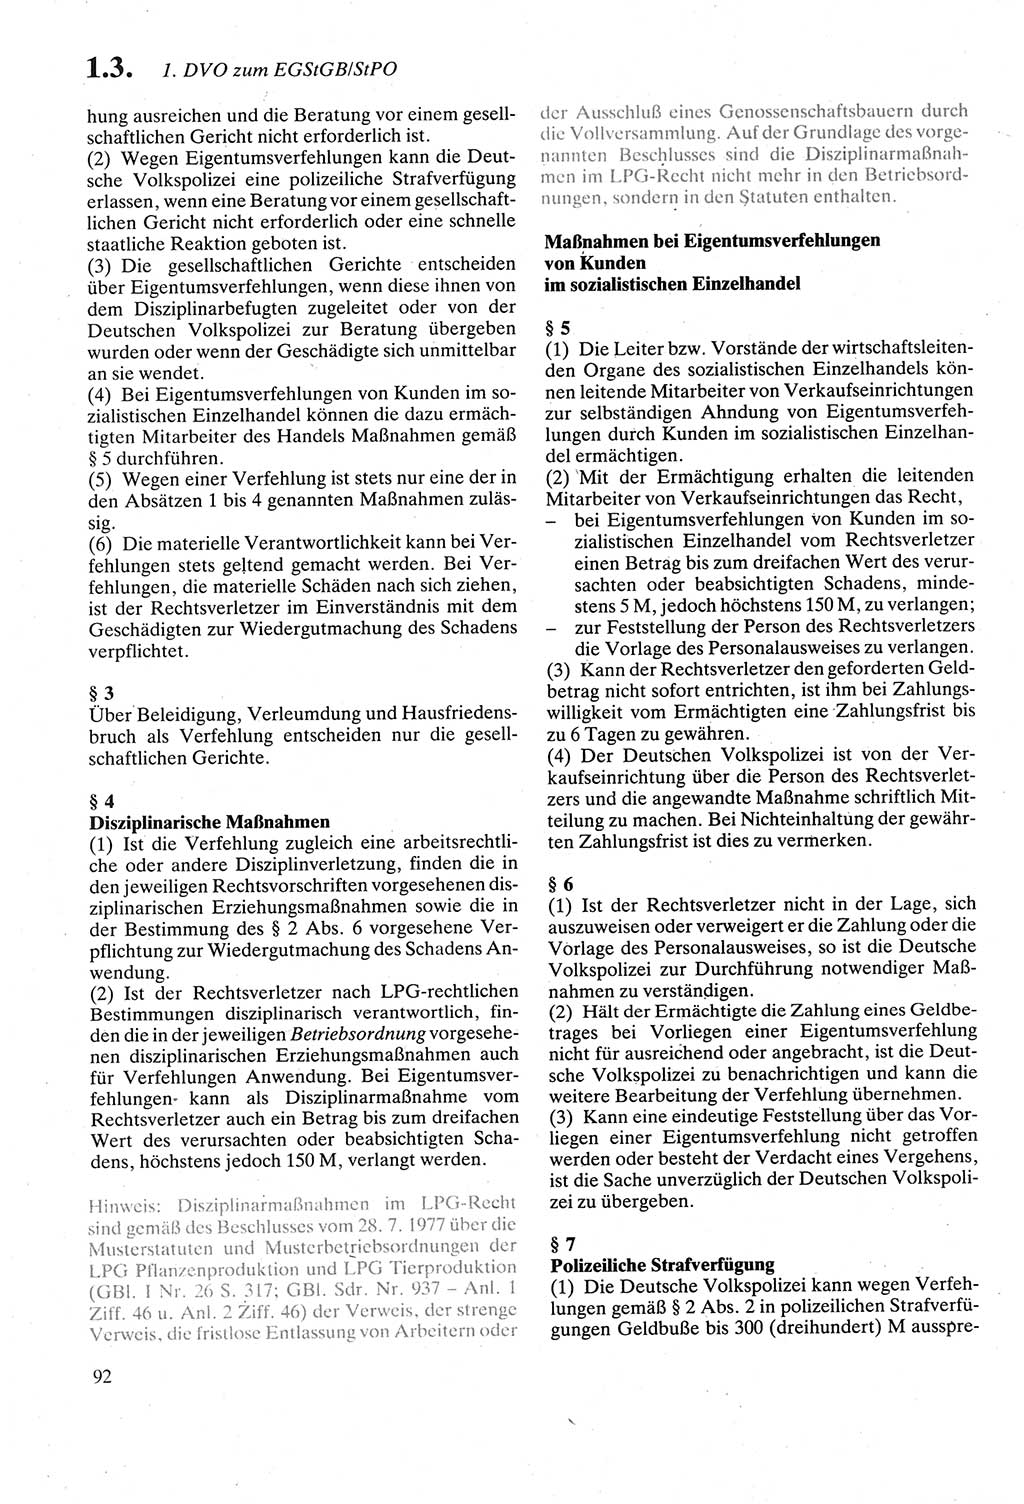 Strafgesetzbuch (StGB) der Deutschen Demokratischen Republik (DDR) sowie angrenzende Gesetze und Bestimmungen 1979, Seite 92 (StGB DDR Ges. Best. 1979, S. 92)